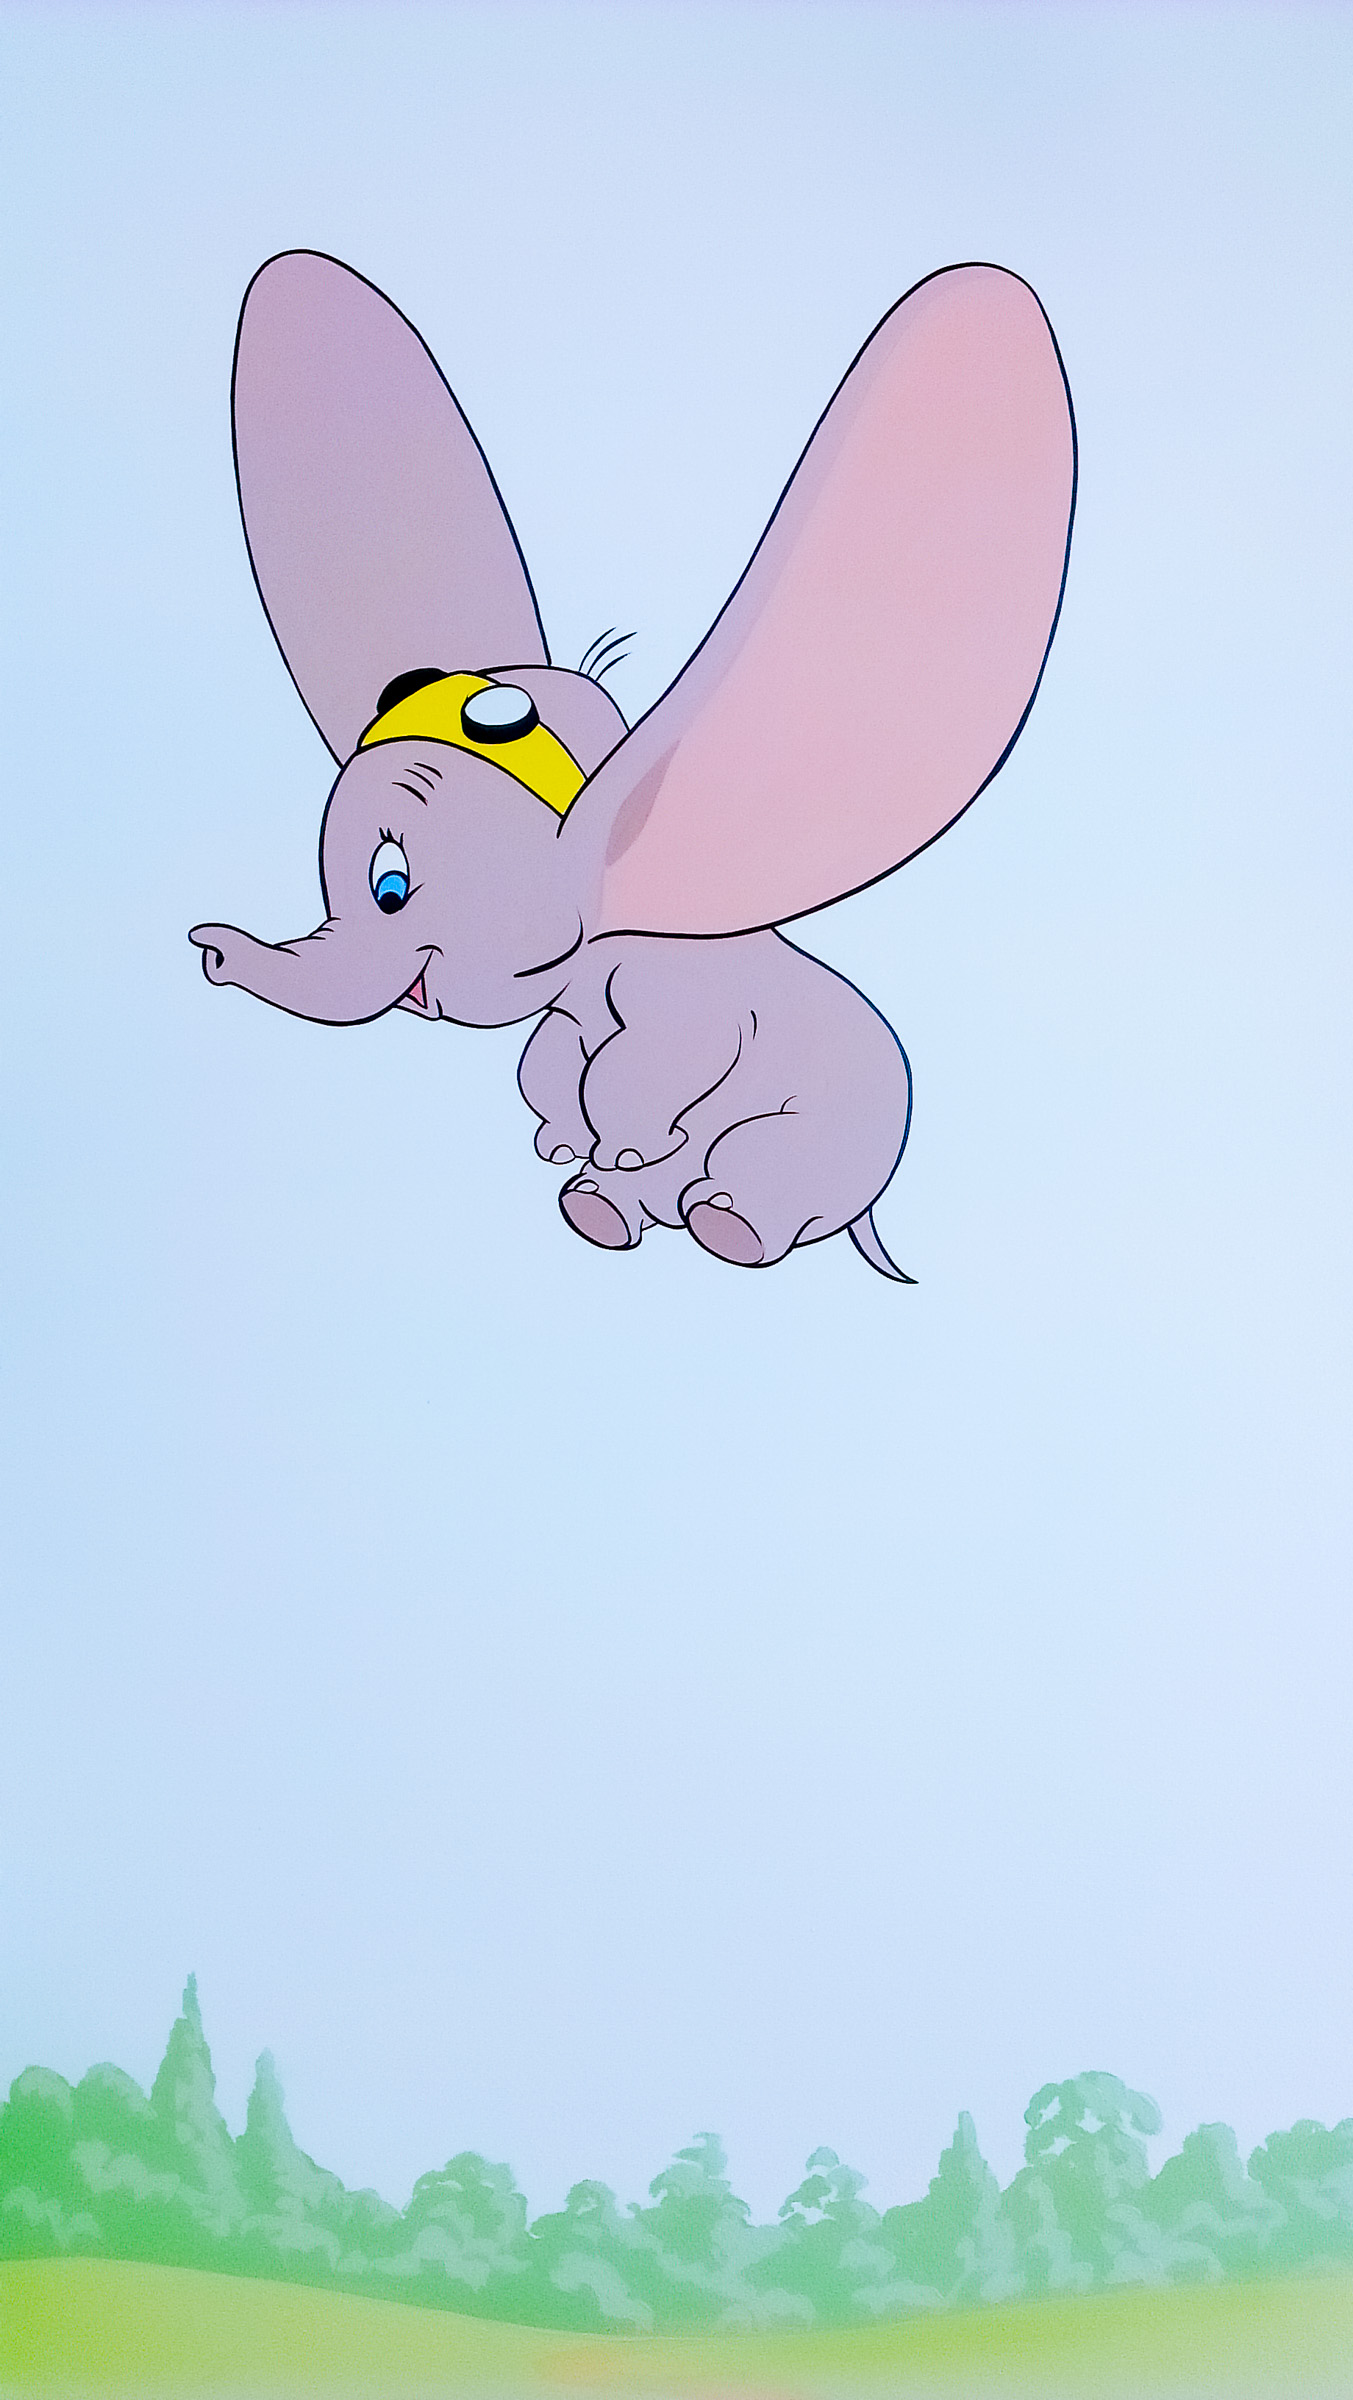 Disney Mural - Dumbo flying high in this nursery mural